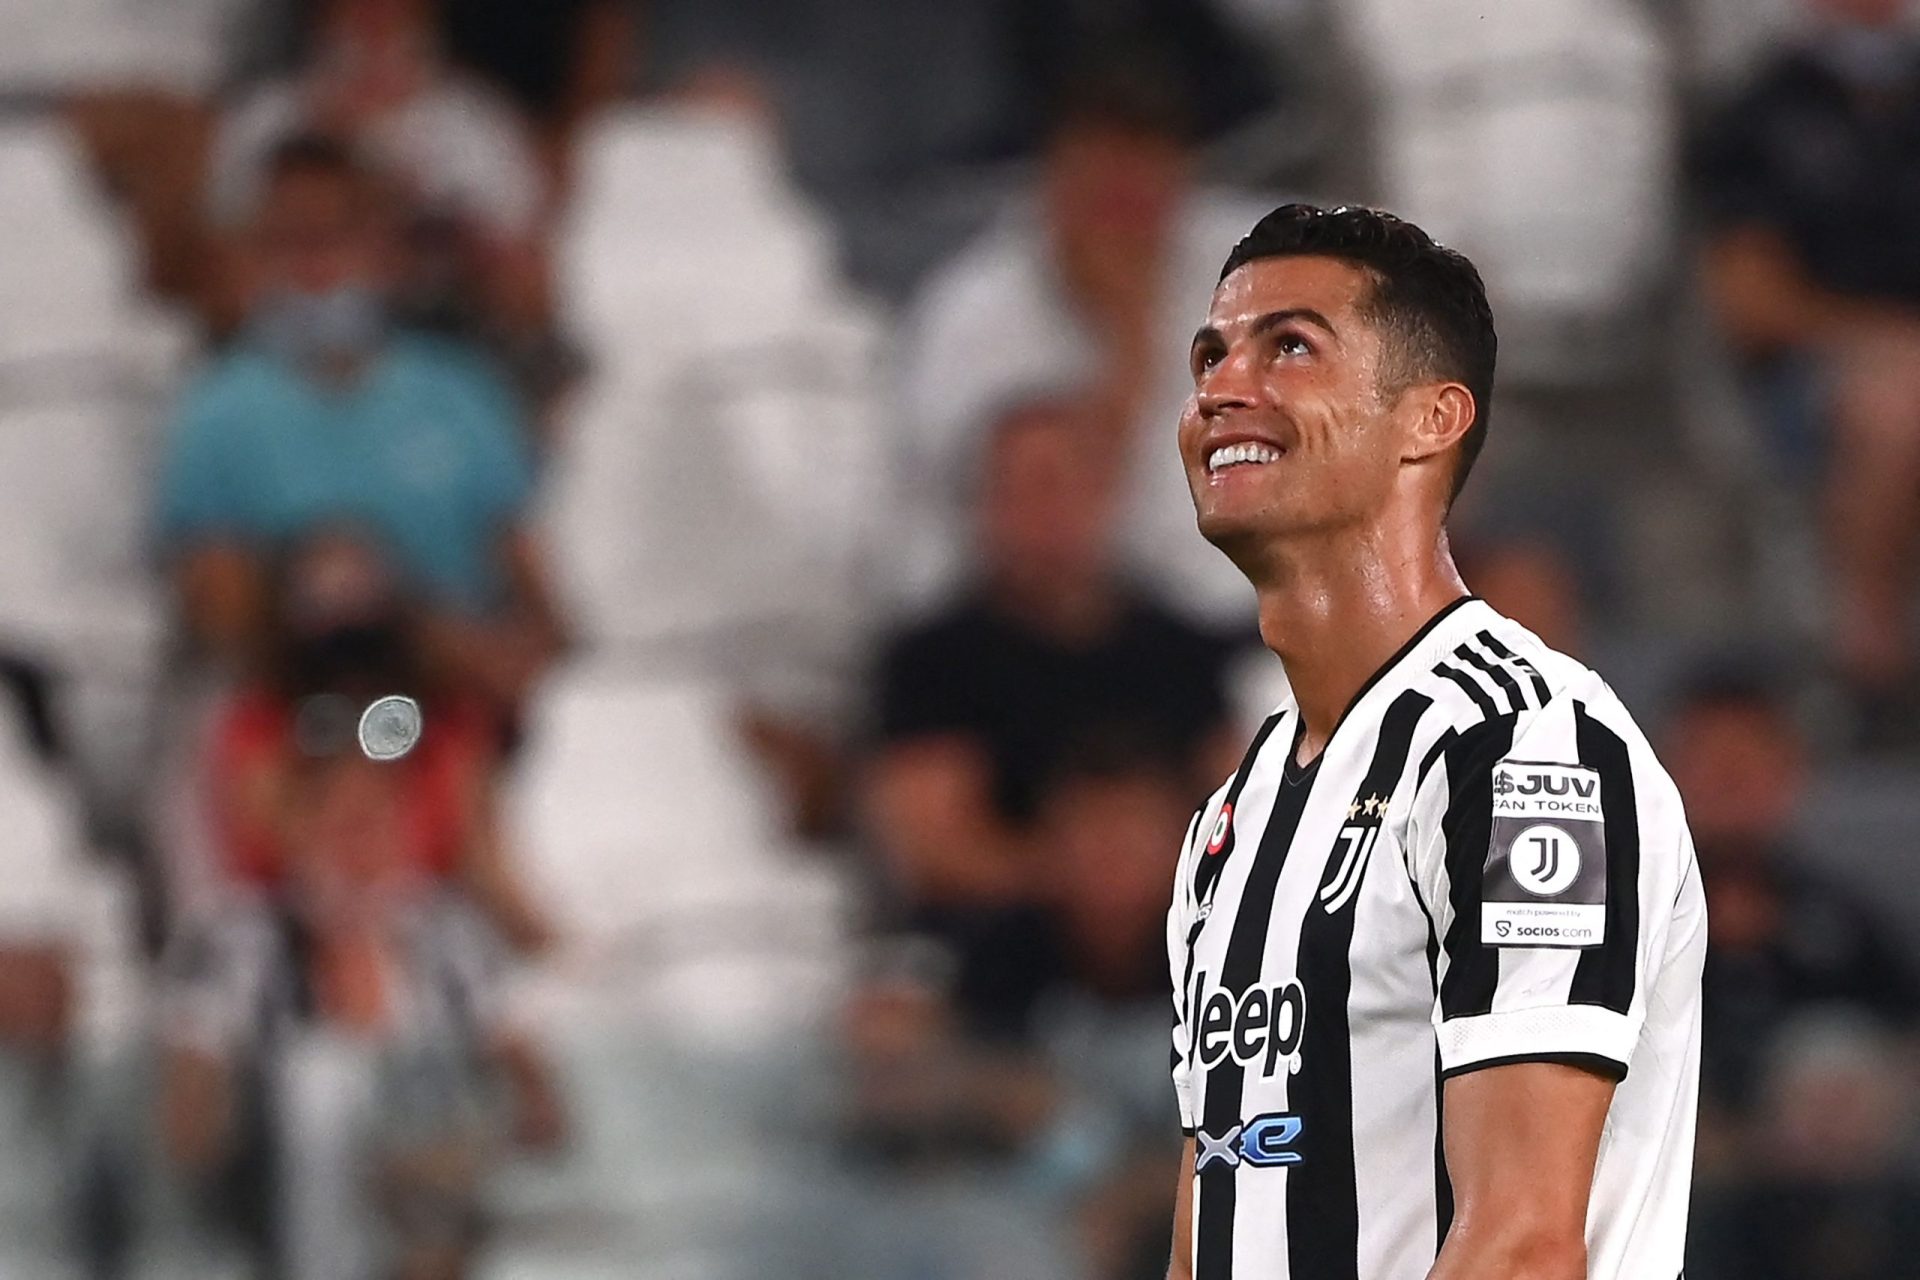 Serie A. Ronaldo no banco causa burburinho